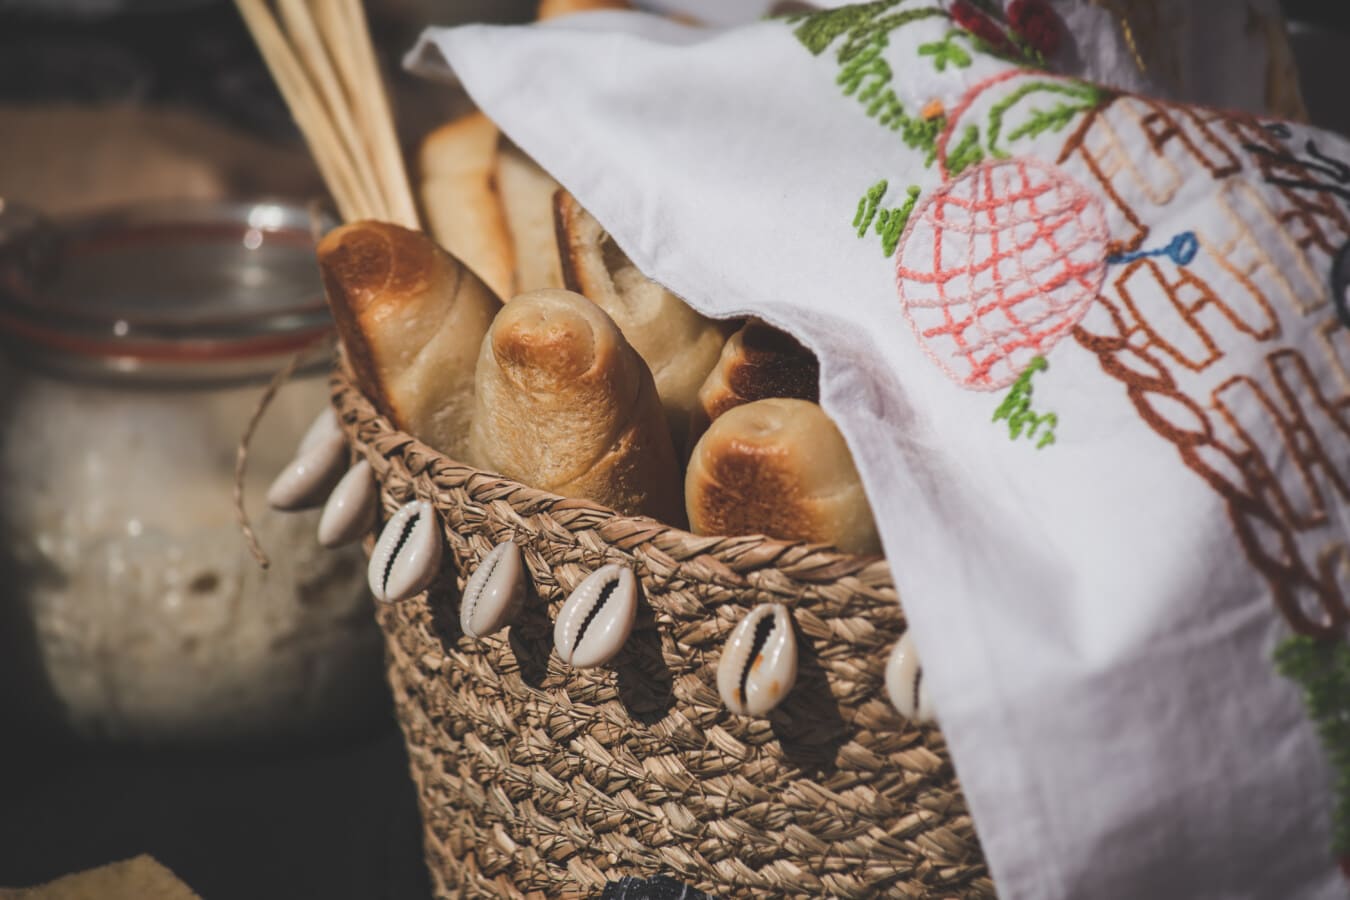 bánh mì ngũ cốc, giỏ wicker, khăn bàn, truyền thống, thực phẩm, bánh mì, nướng bánh, vẫn còn sống, nấu ăn, tự chế